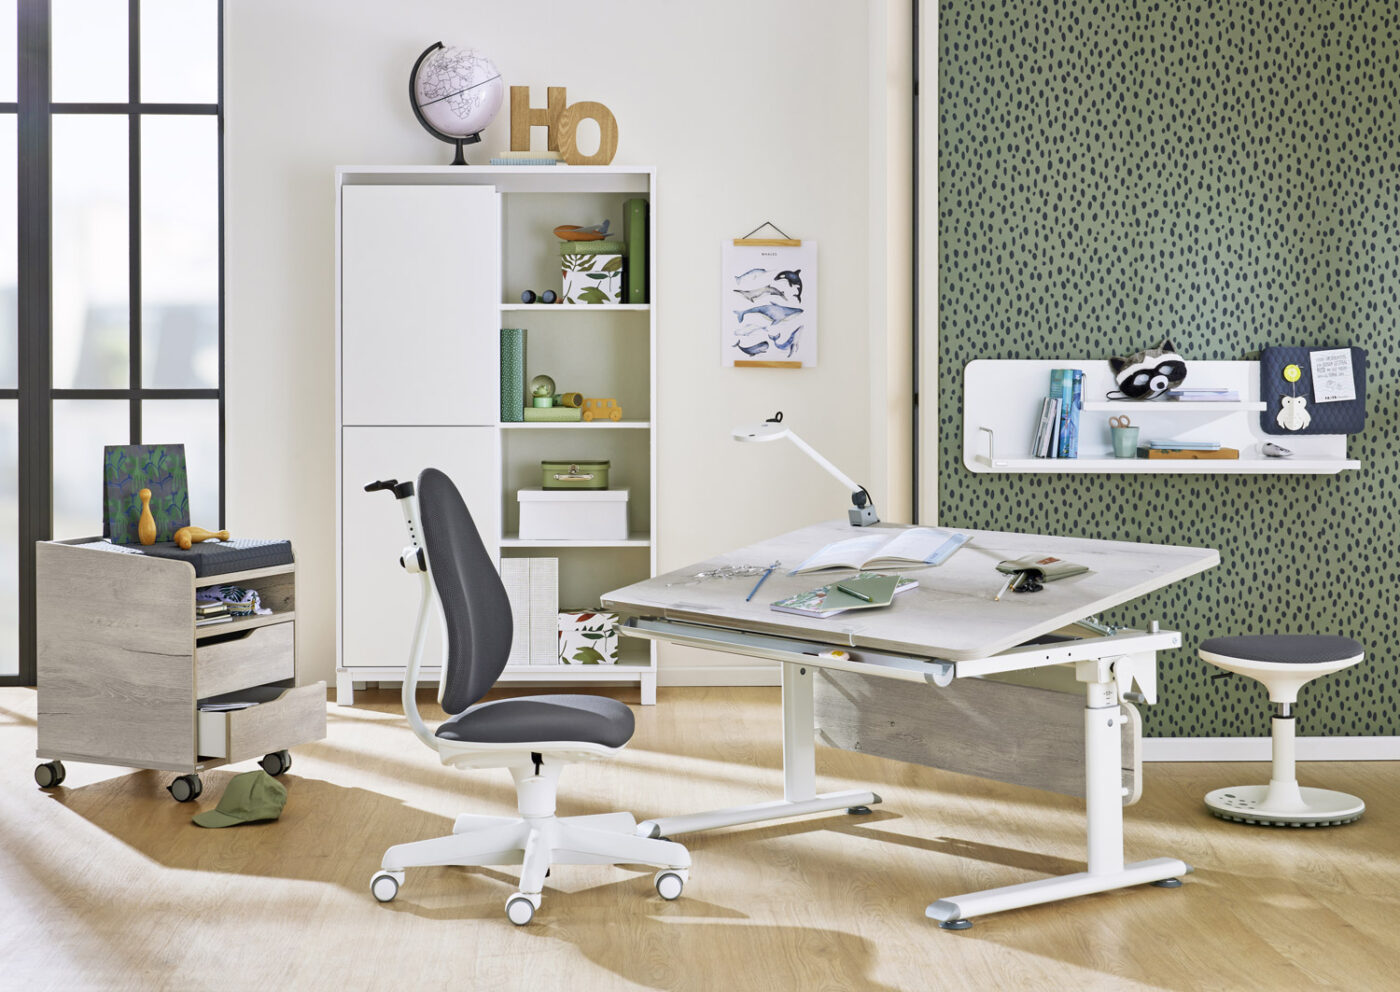 Modern eingerichtetes Kinderzimmer mit PAIDI Kinderschreibtisch Diego, grauem Schreibtischstuhl Jooki und Sitzhocker Speedy vor einer grünen Akzentwand.